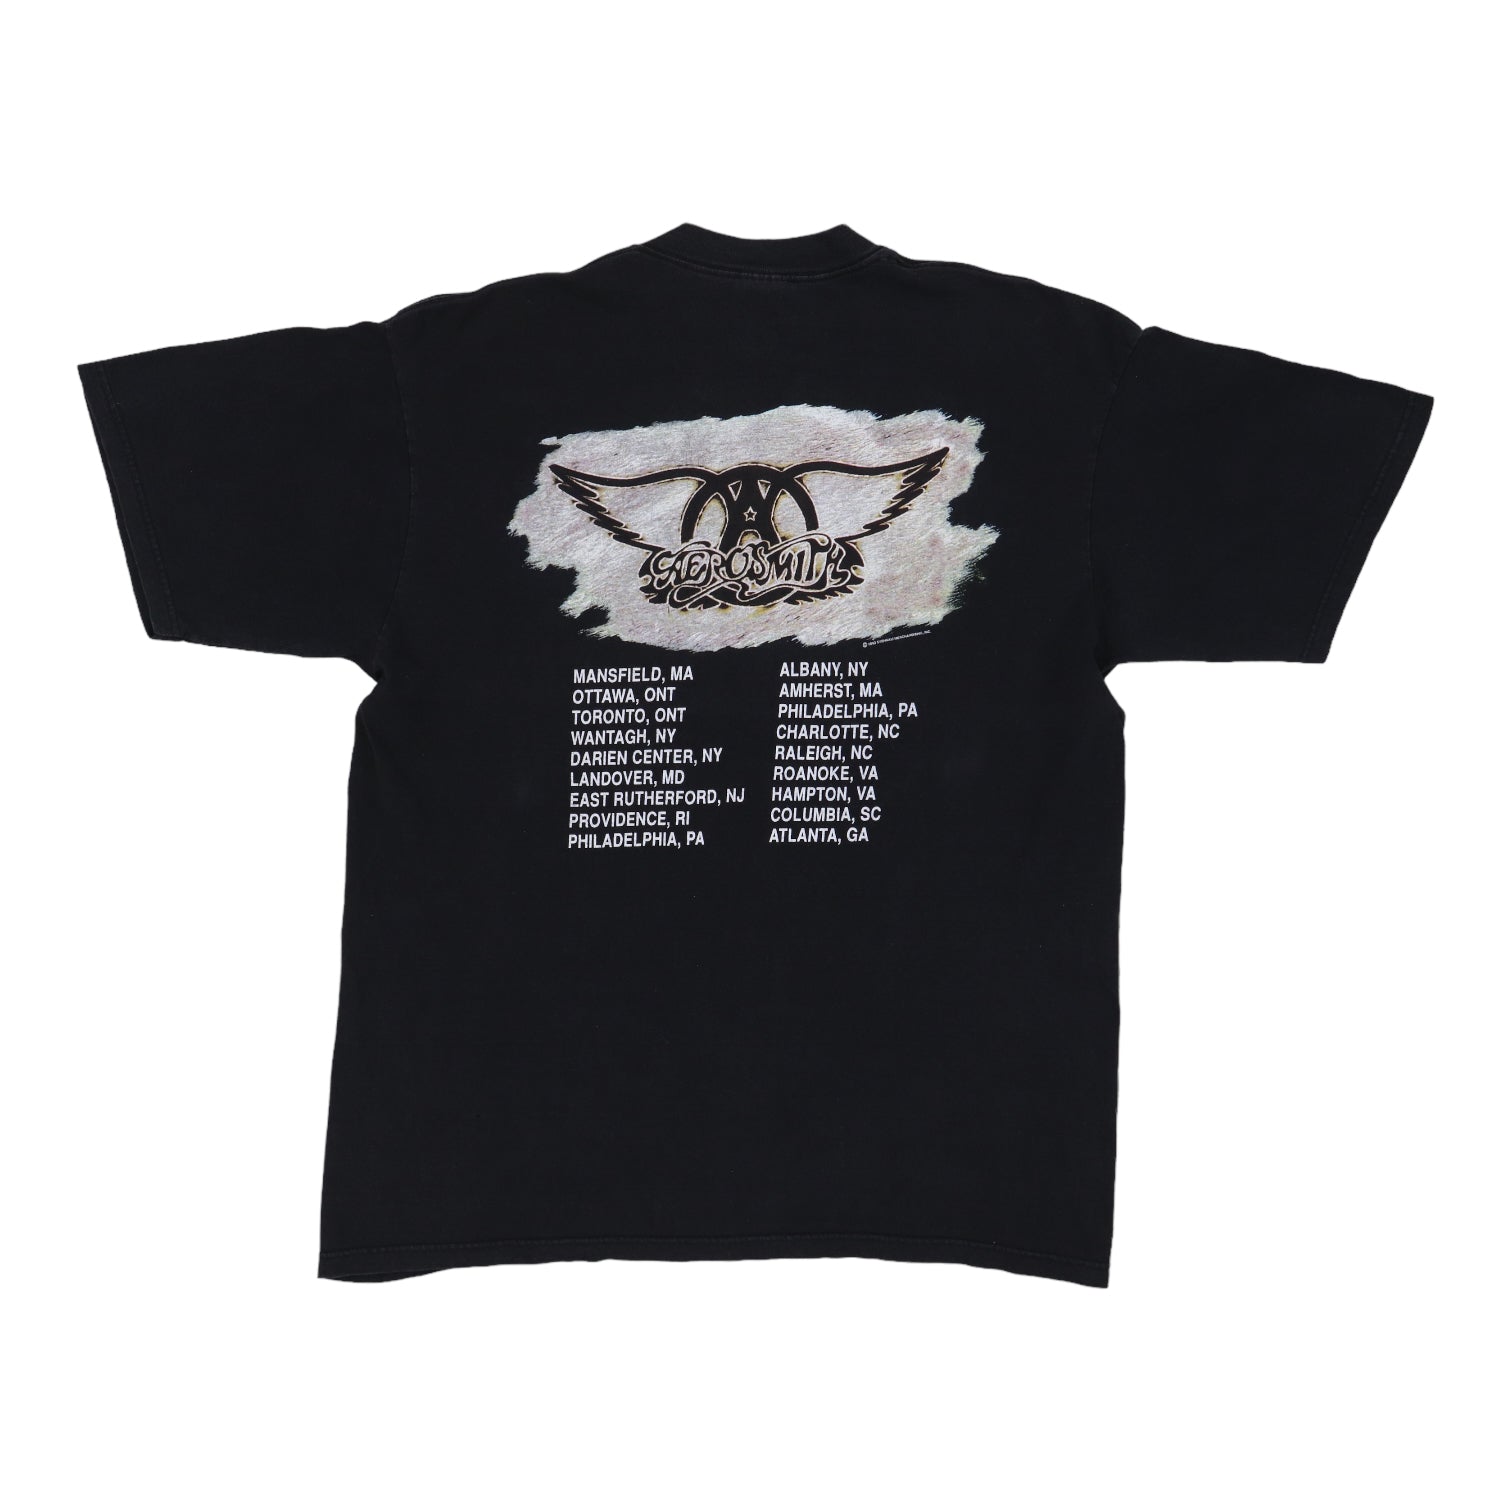 1993 Aerosmith Get A Grip Tour Shirt – WyCo Vintage